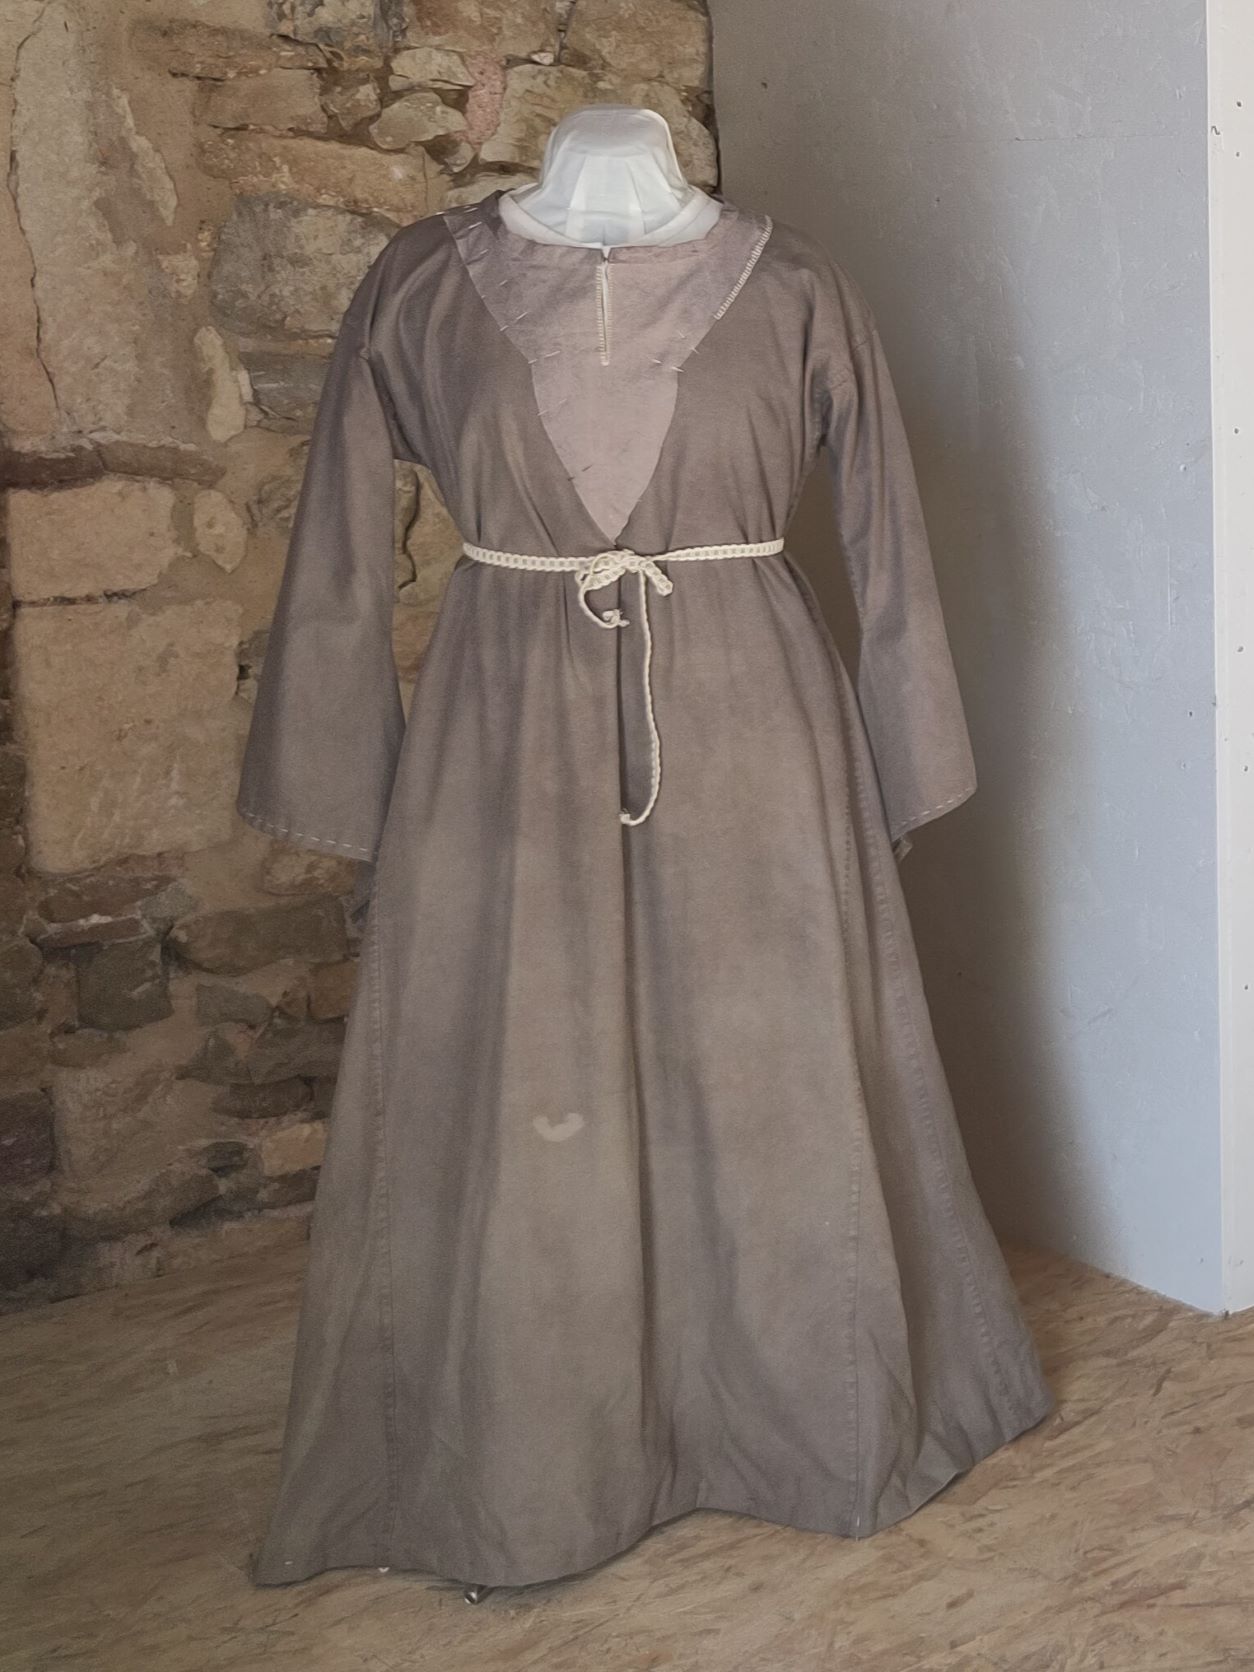 robe du 12e siècle aux manches longues et évasées en bas, ceinturée à la taille